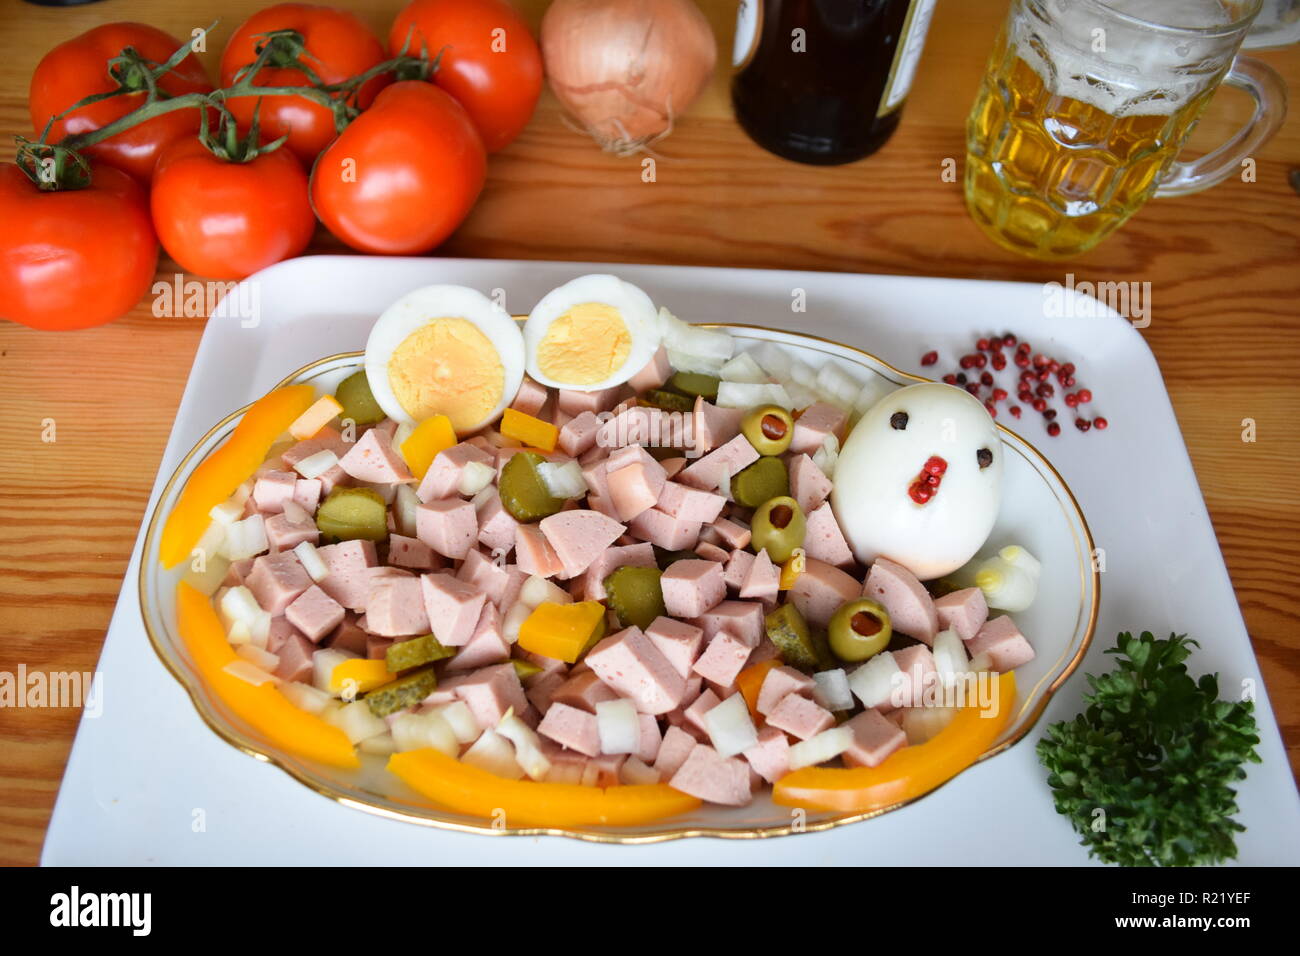 Wurst salat als frühstück mit lyoner, zwiebel, oliven und Gurken.   Sausage salad as a breakfast with lyoner, onion, olives and cucumbers. Stock Photo